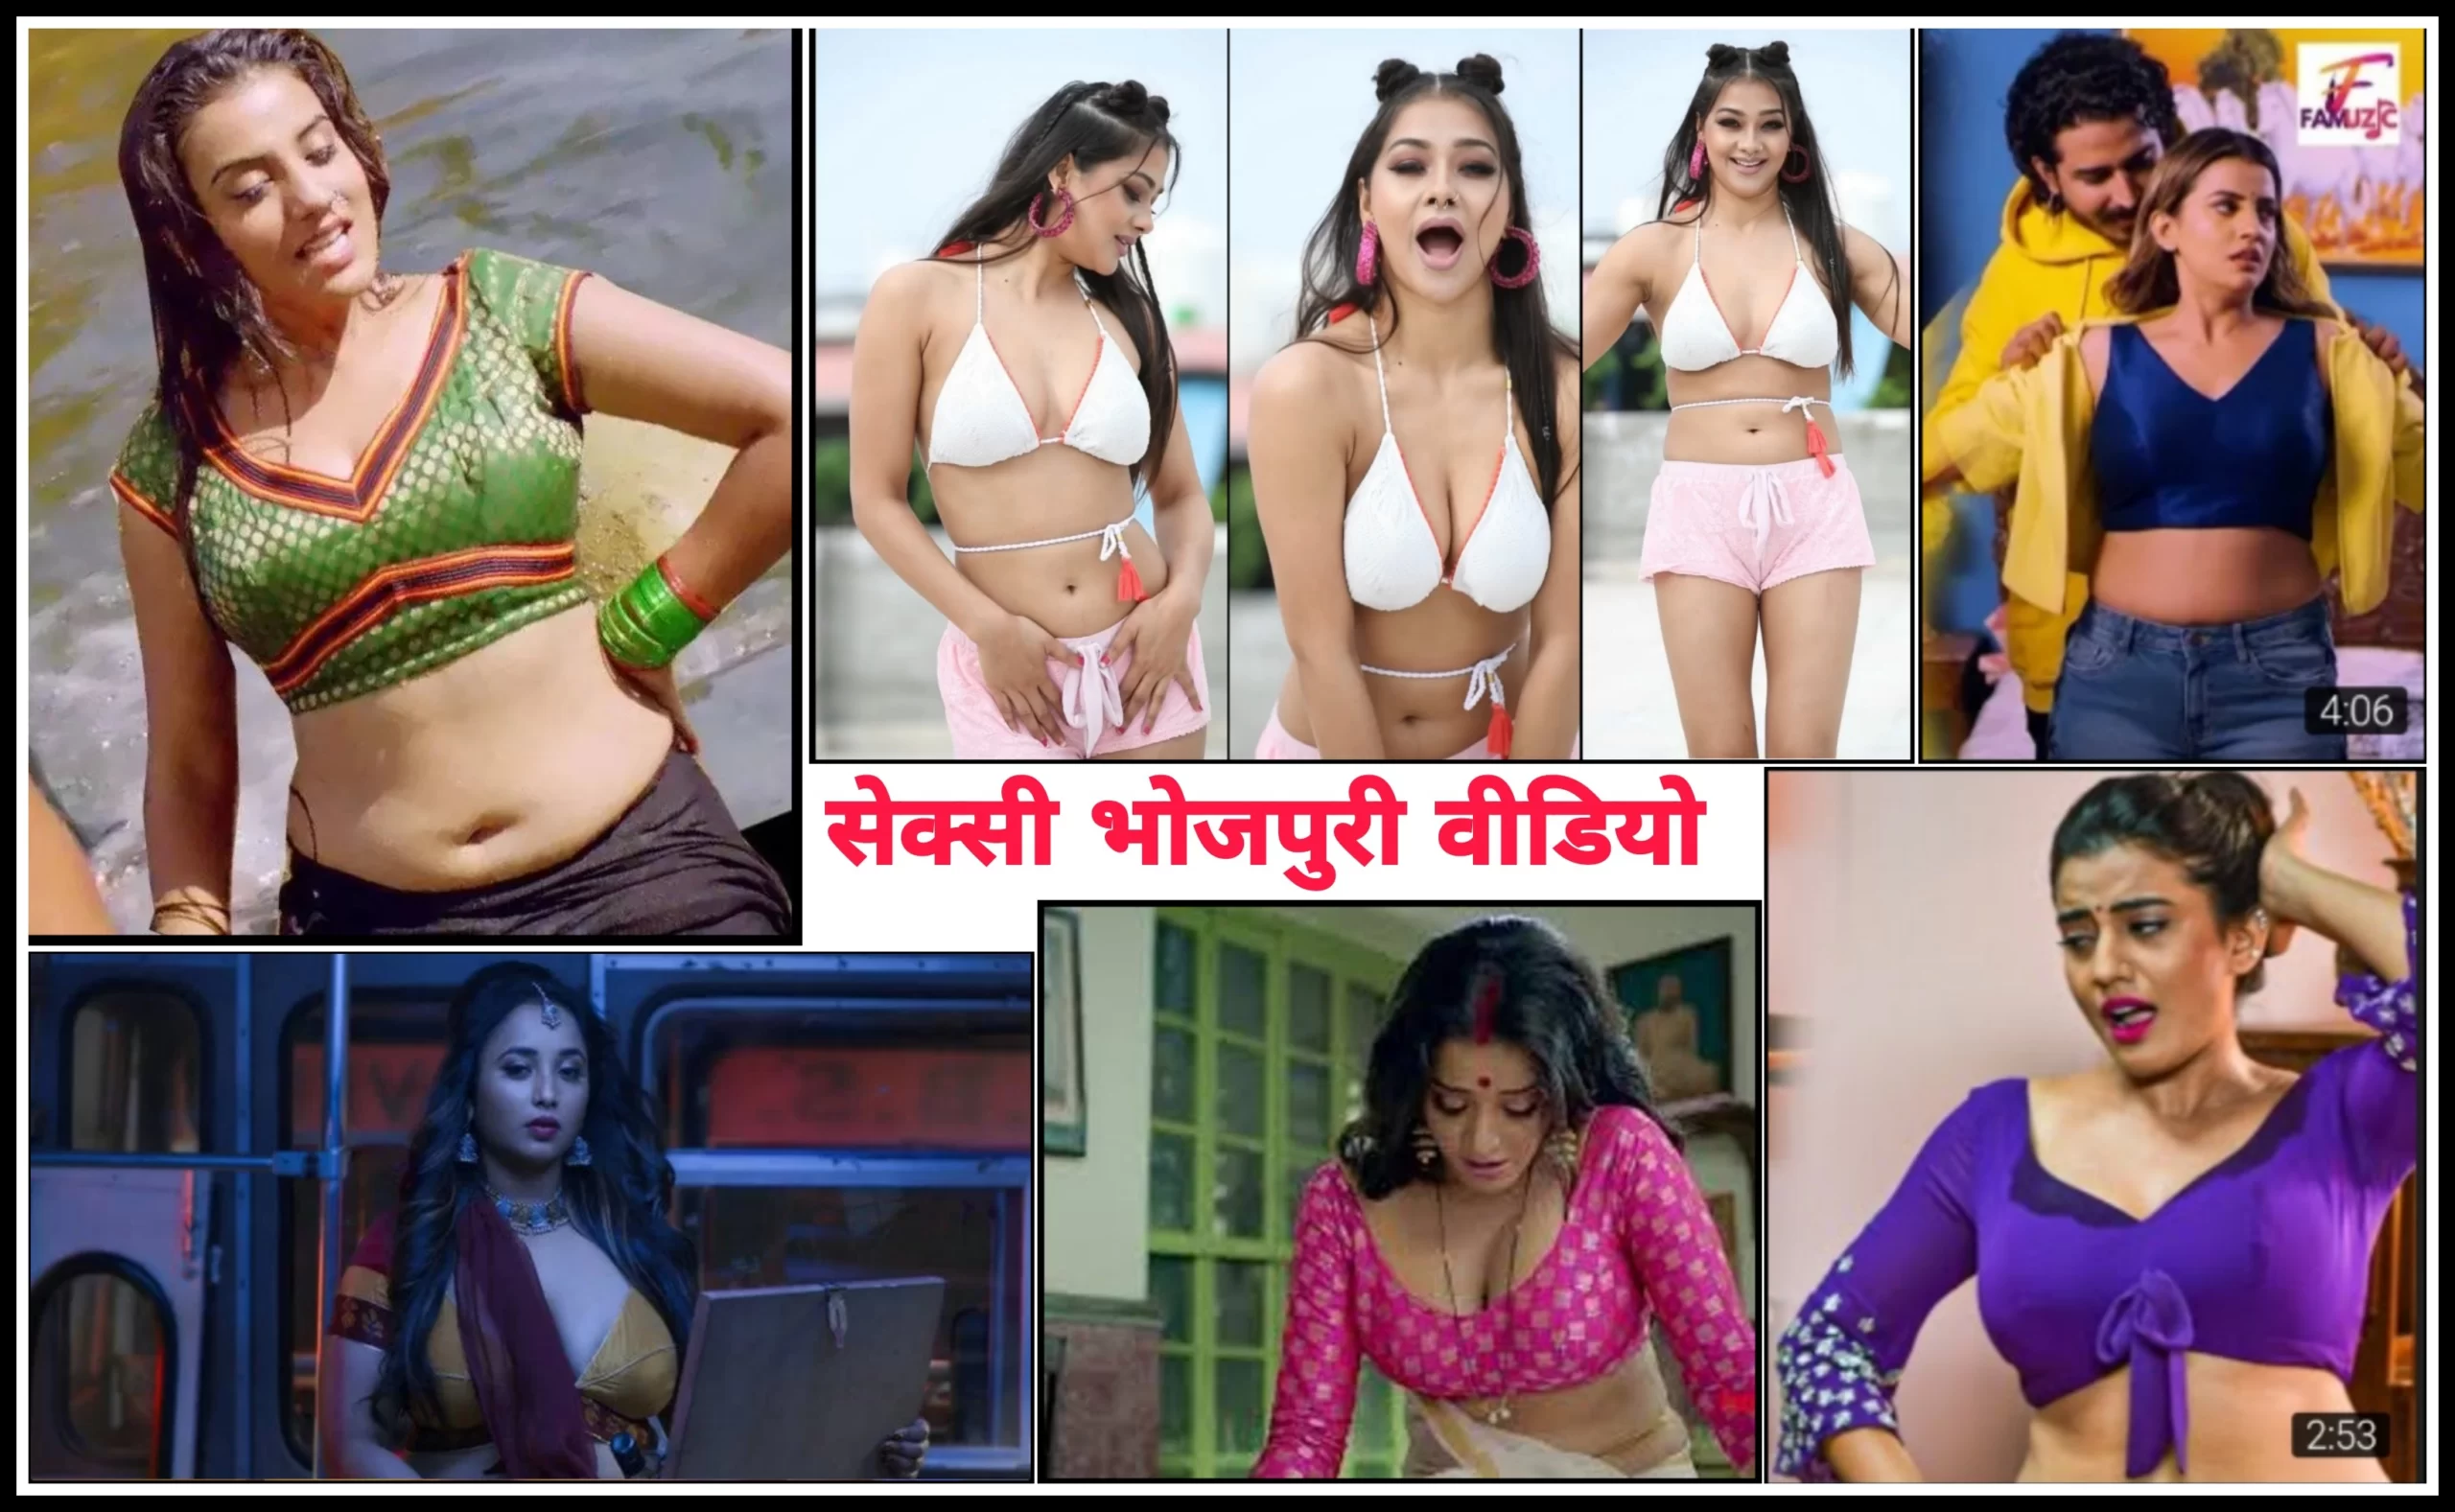 Bhojpuri Sexy Video | भोजपुरी सेक्सी वीडियो : सबसे गंदी वीडियो